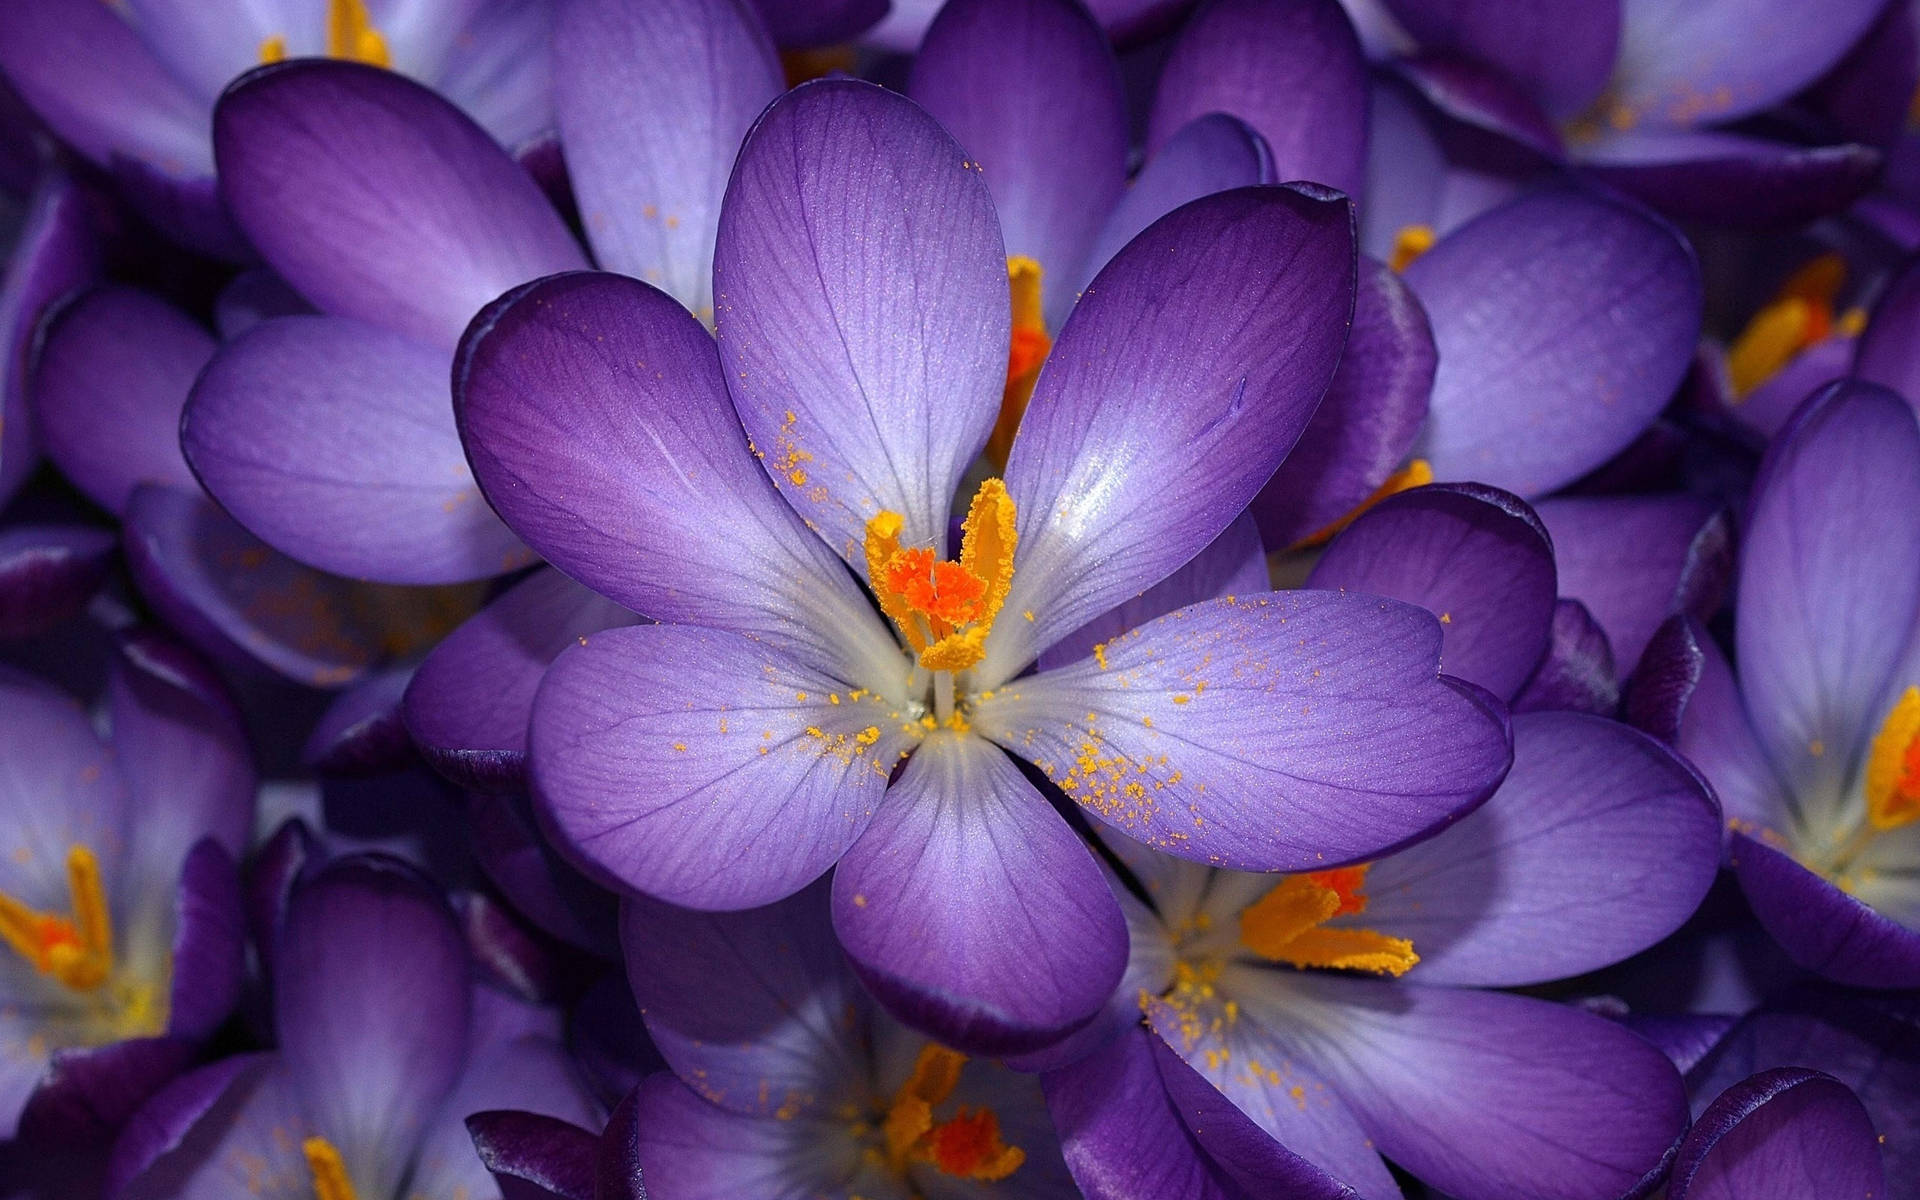 lovely purple flowers